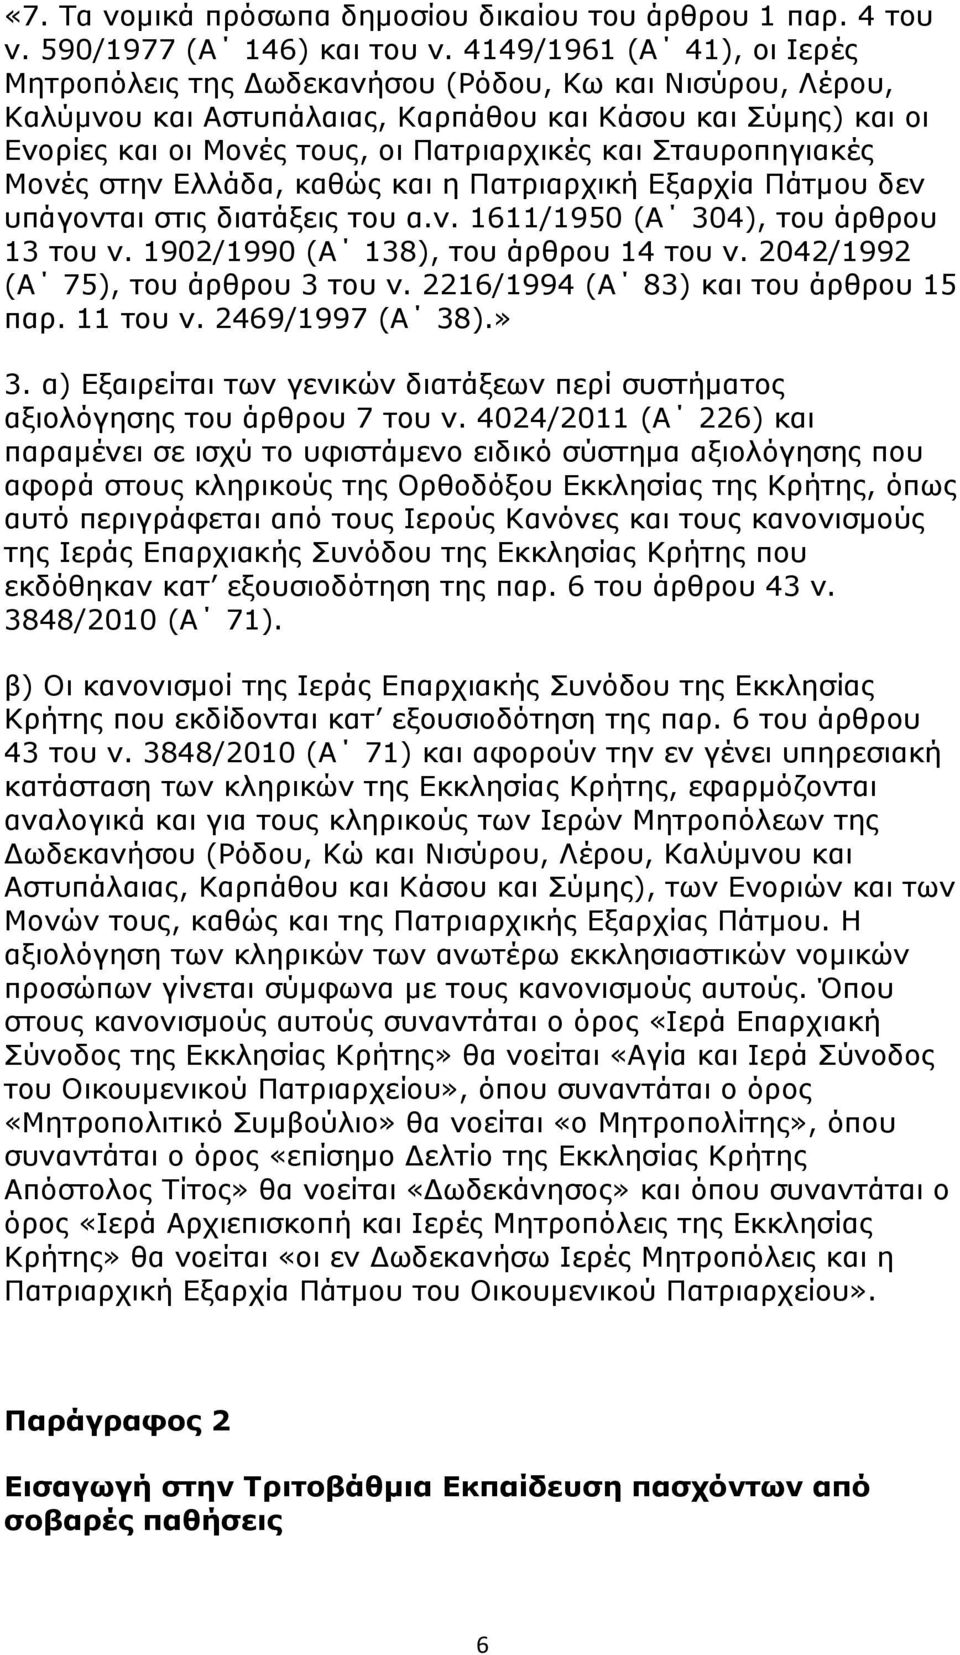 Σταυροπηγιακές Μονές στην Ελλάδα, καθώς και η Πατριαρχική Εξαρχία Πάτμου δεν υπάγονται στις διατάξεις του α.ν. 1611/1950 (Α 304), του άρθρου 13 του ν. 1902/1990 (Α 138), του άρθρου 14 του ν.